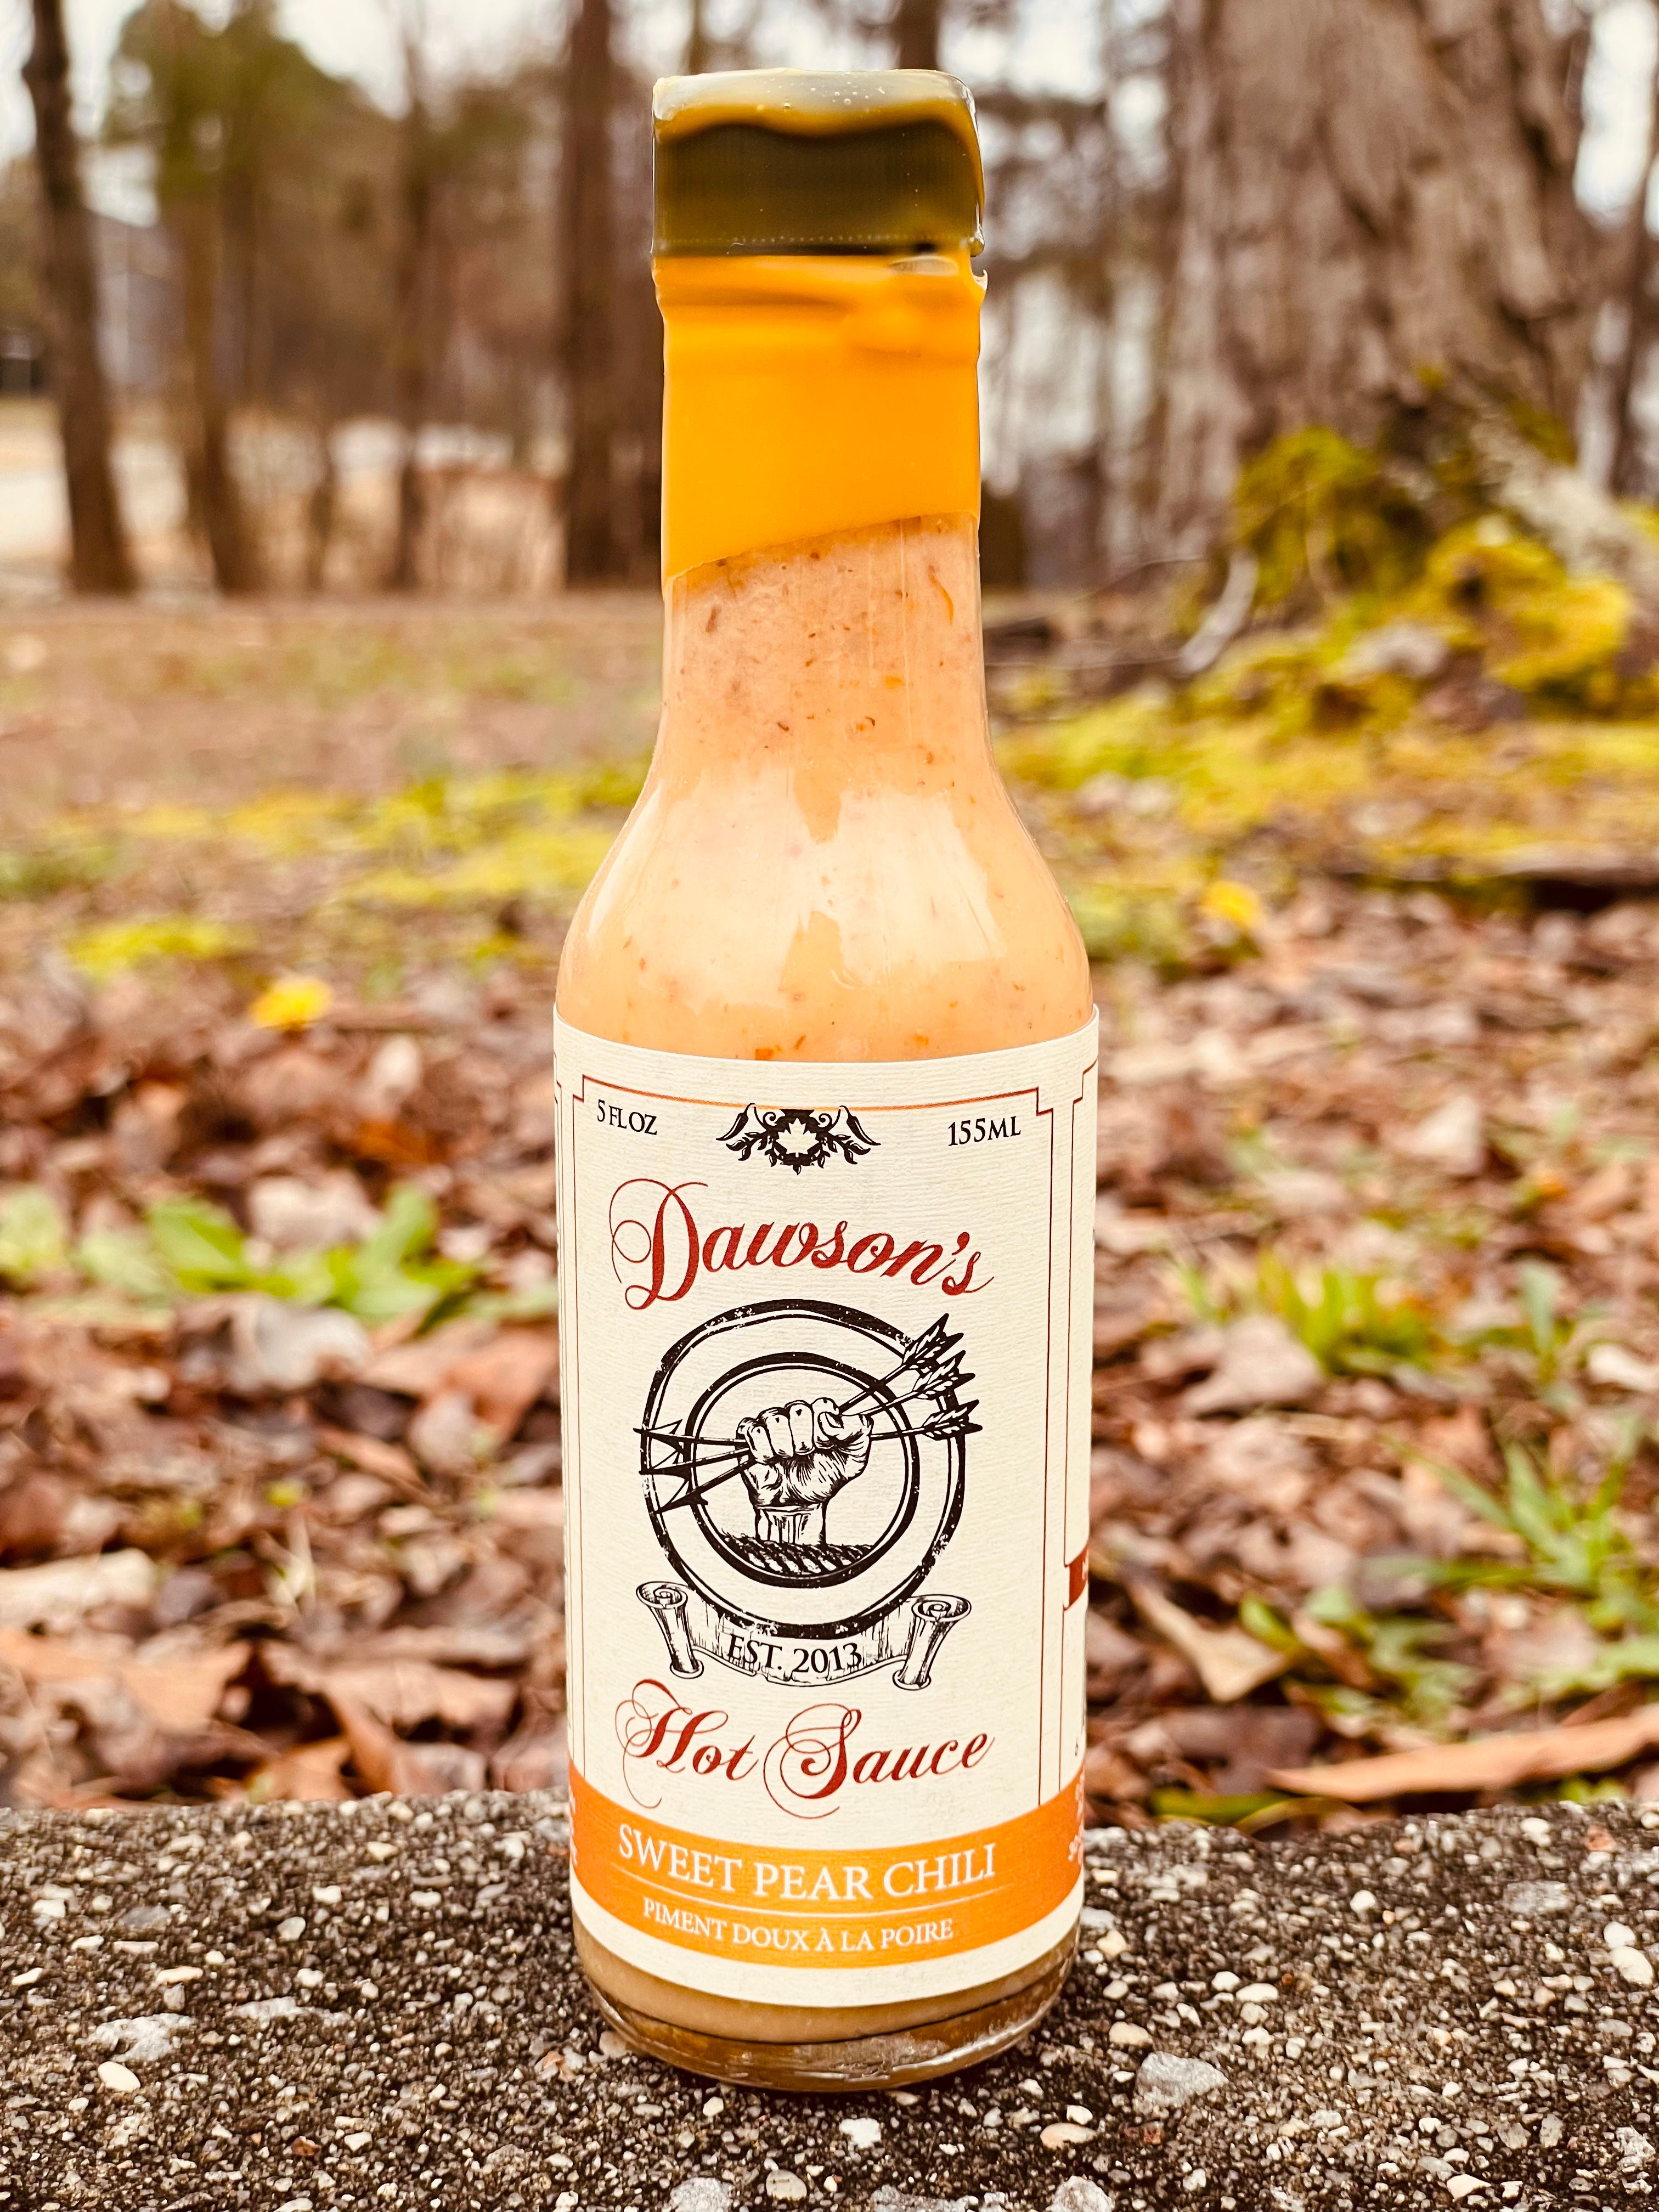 Dawson's Sweet Pear Chili Hot Sauce –